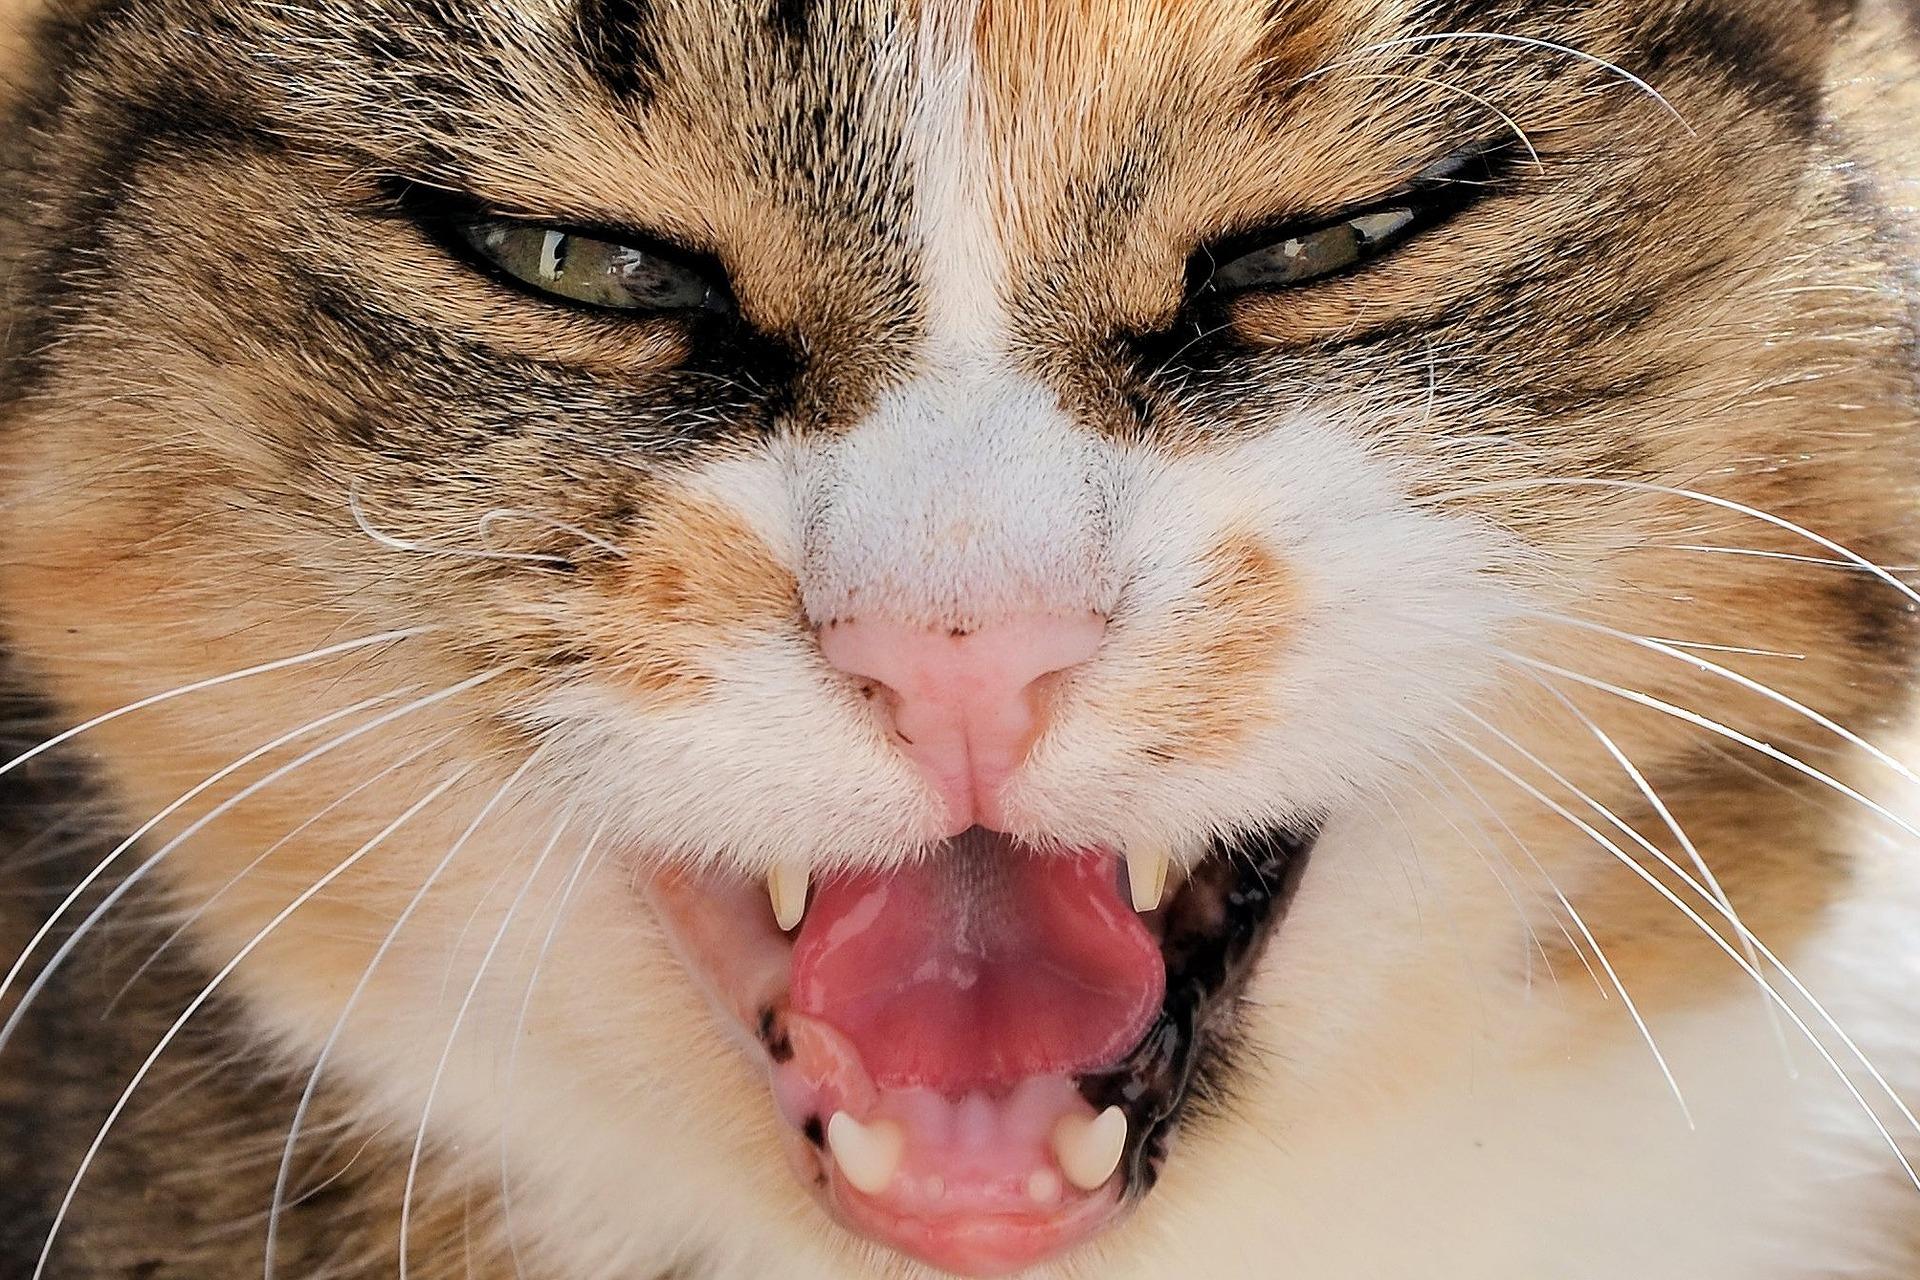 Mi Gato Tiene Las Encías Rojas E Hinchadas: Estomatitis en